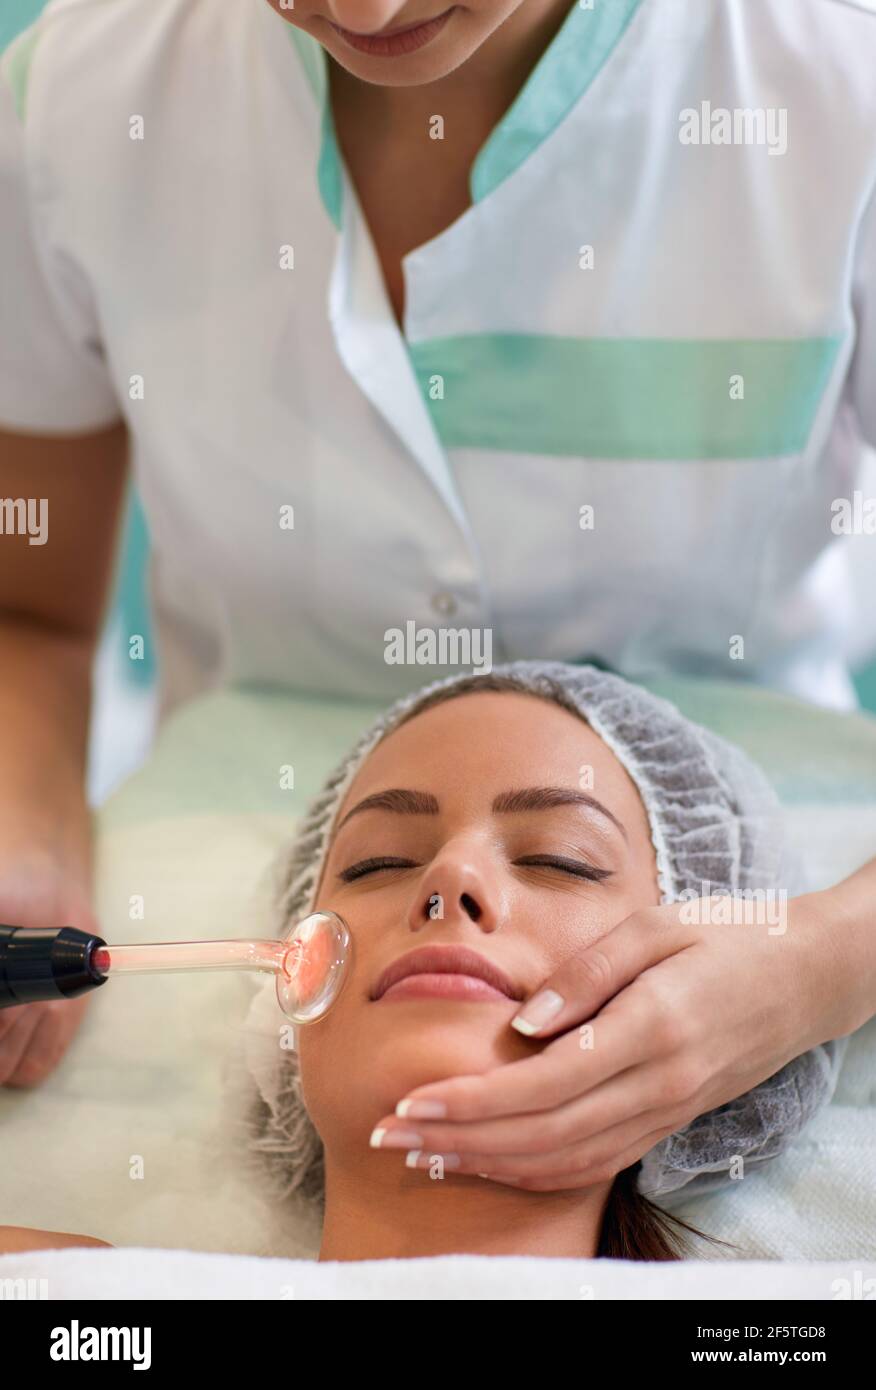 Trattamento di bellezza facciale per risolvere la pelle problematica con i pimples o l'acne, procedura di darronvalization della pelle Foto Stock